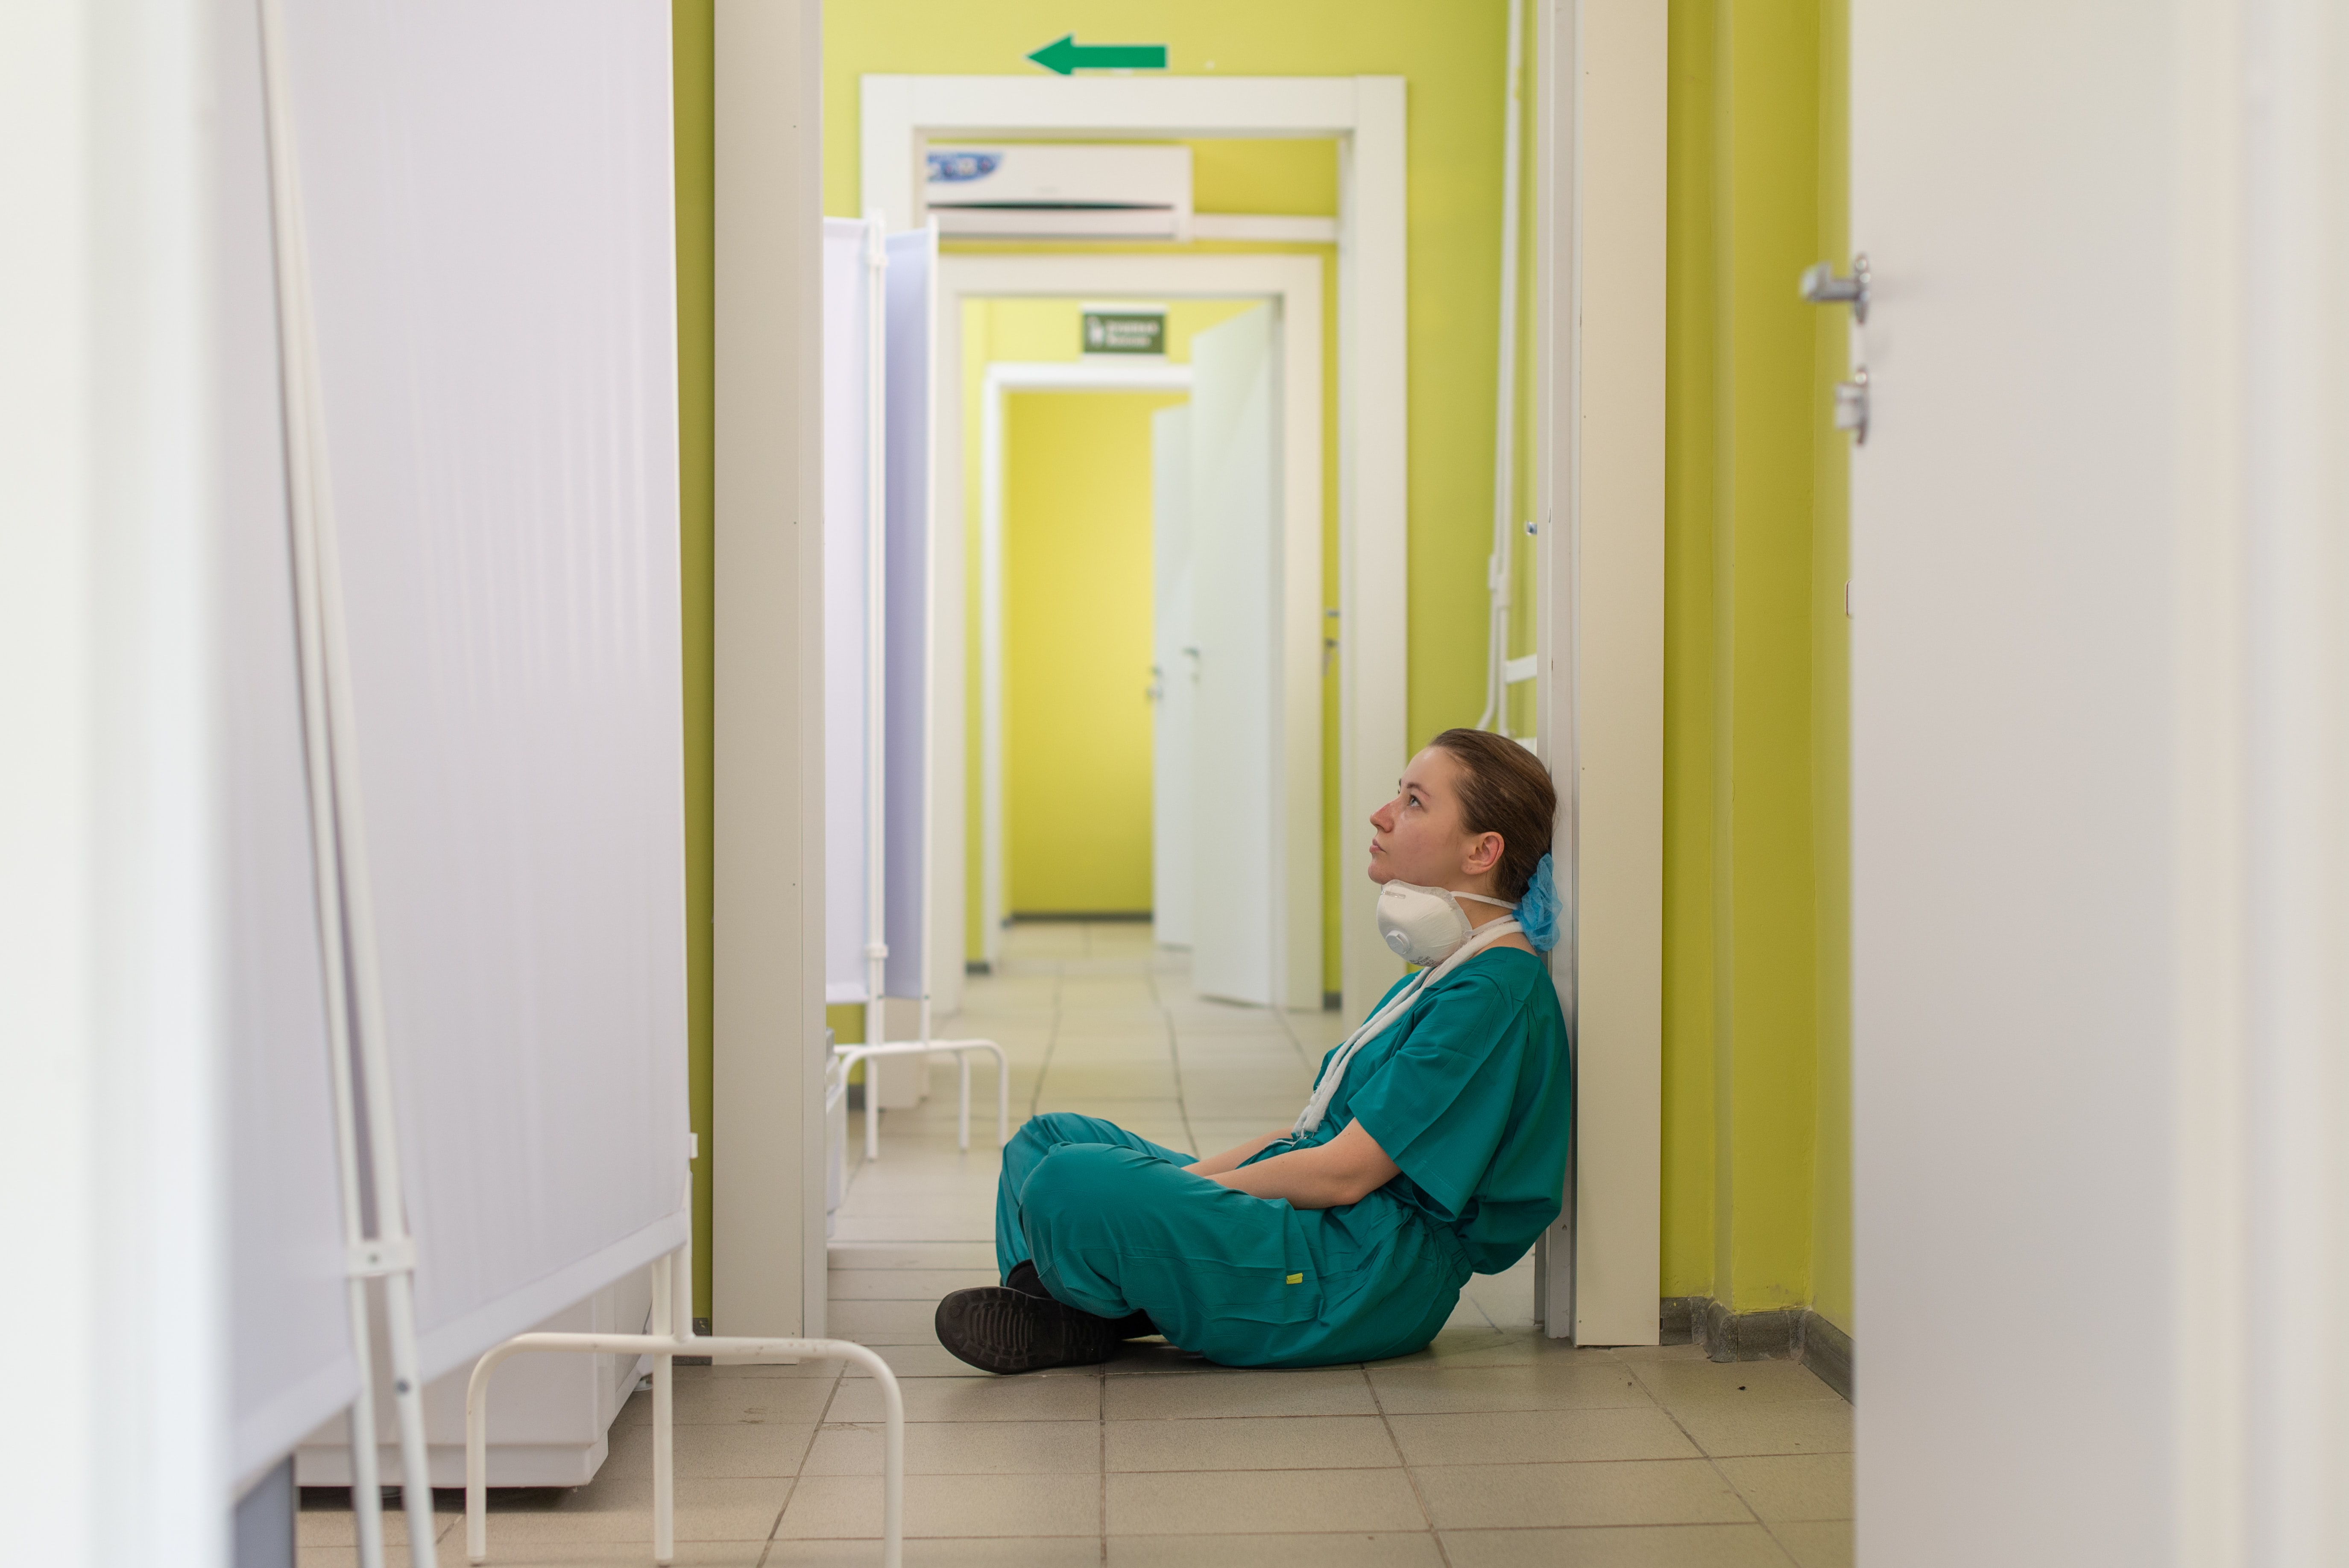 Hospitais Privados se negam a dar reajuste para os Enfermeiros